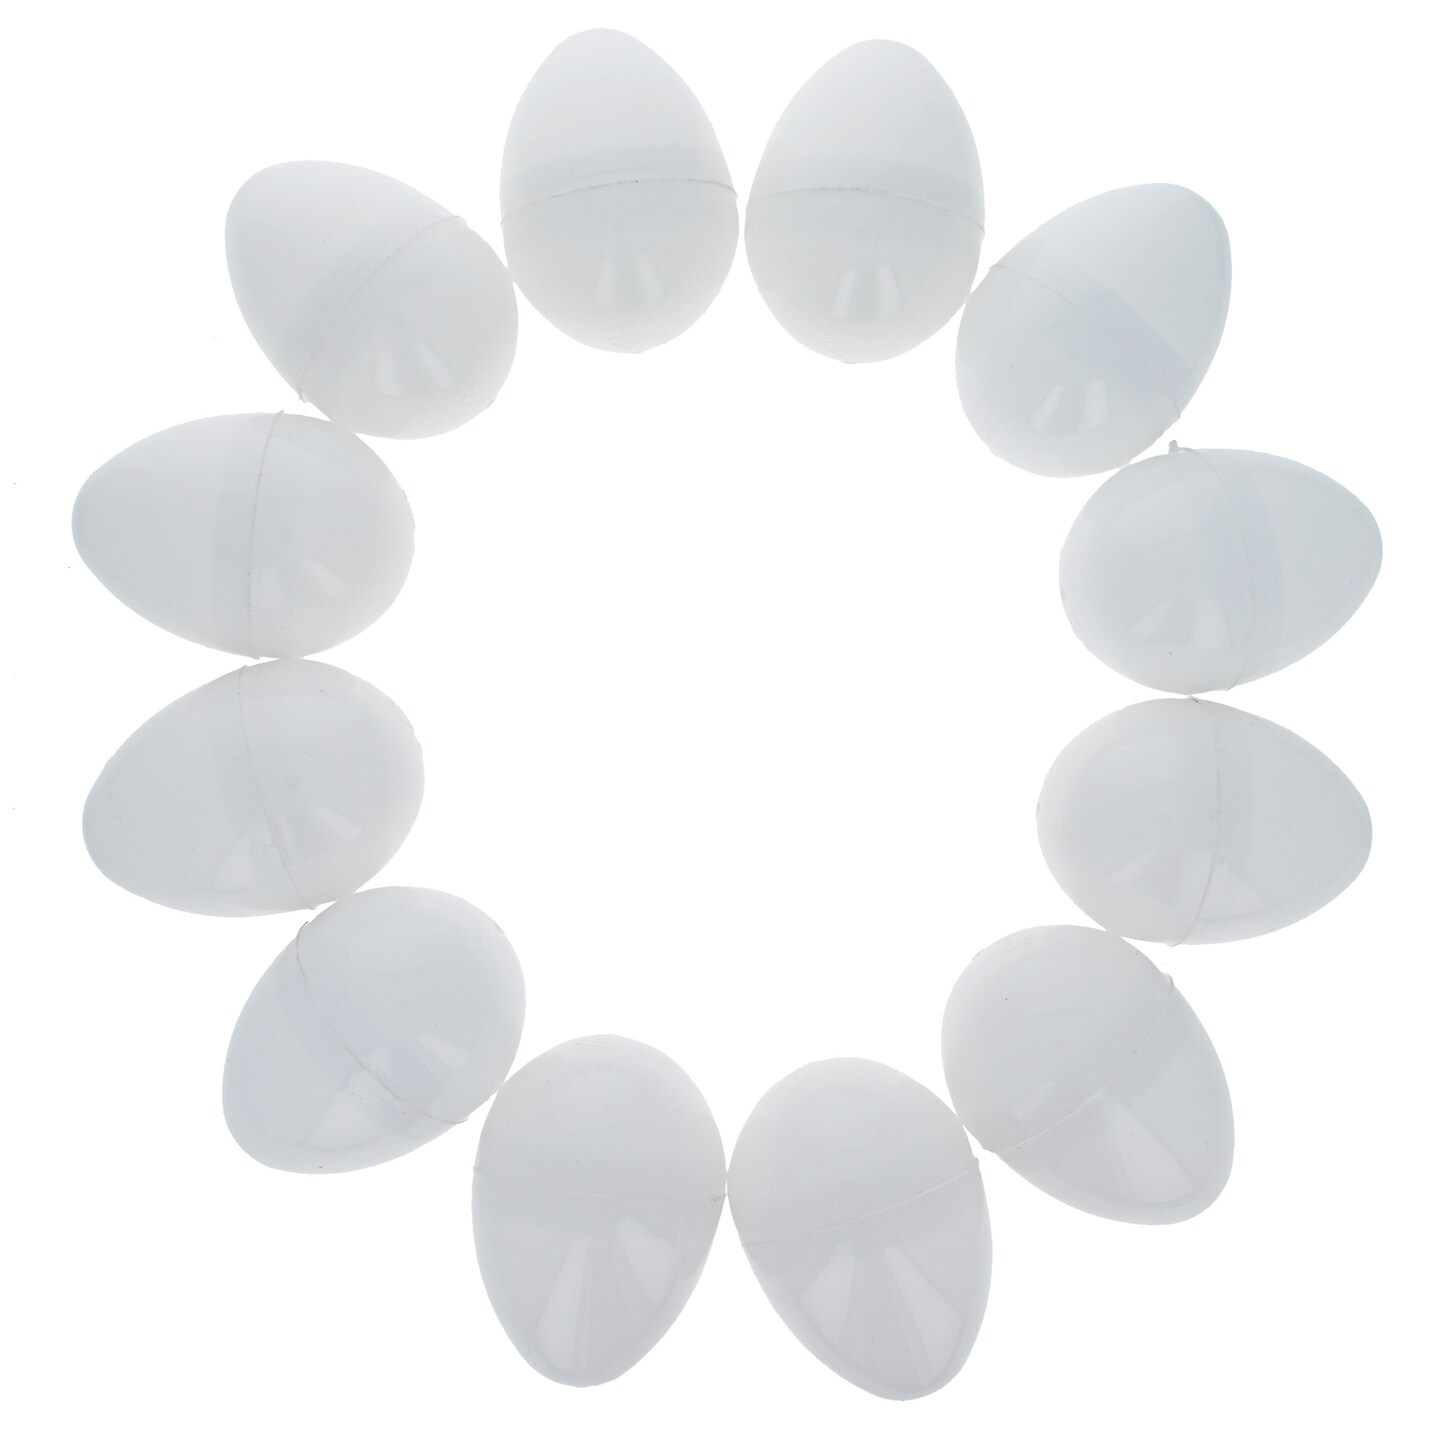 12 White Plastic Easter Eggs